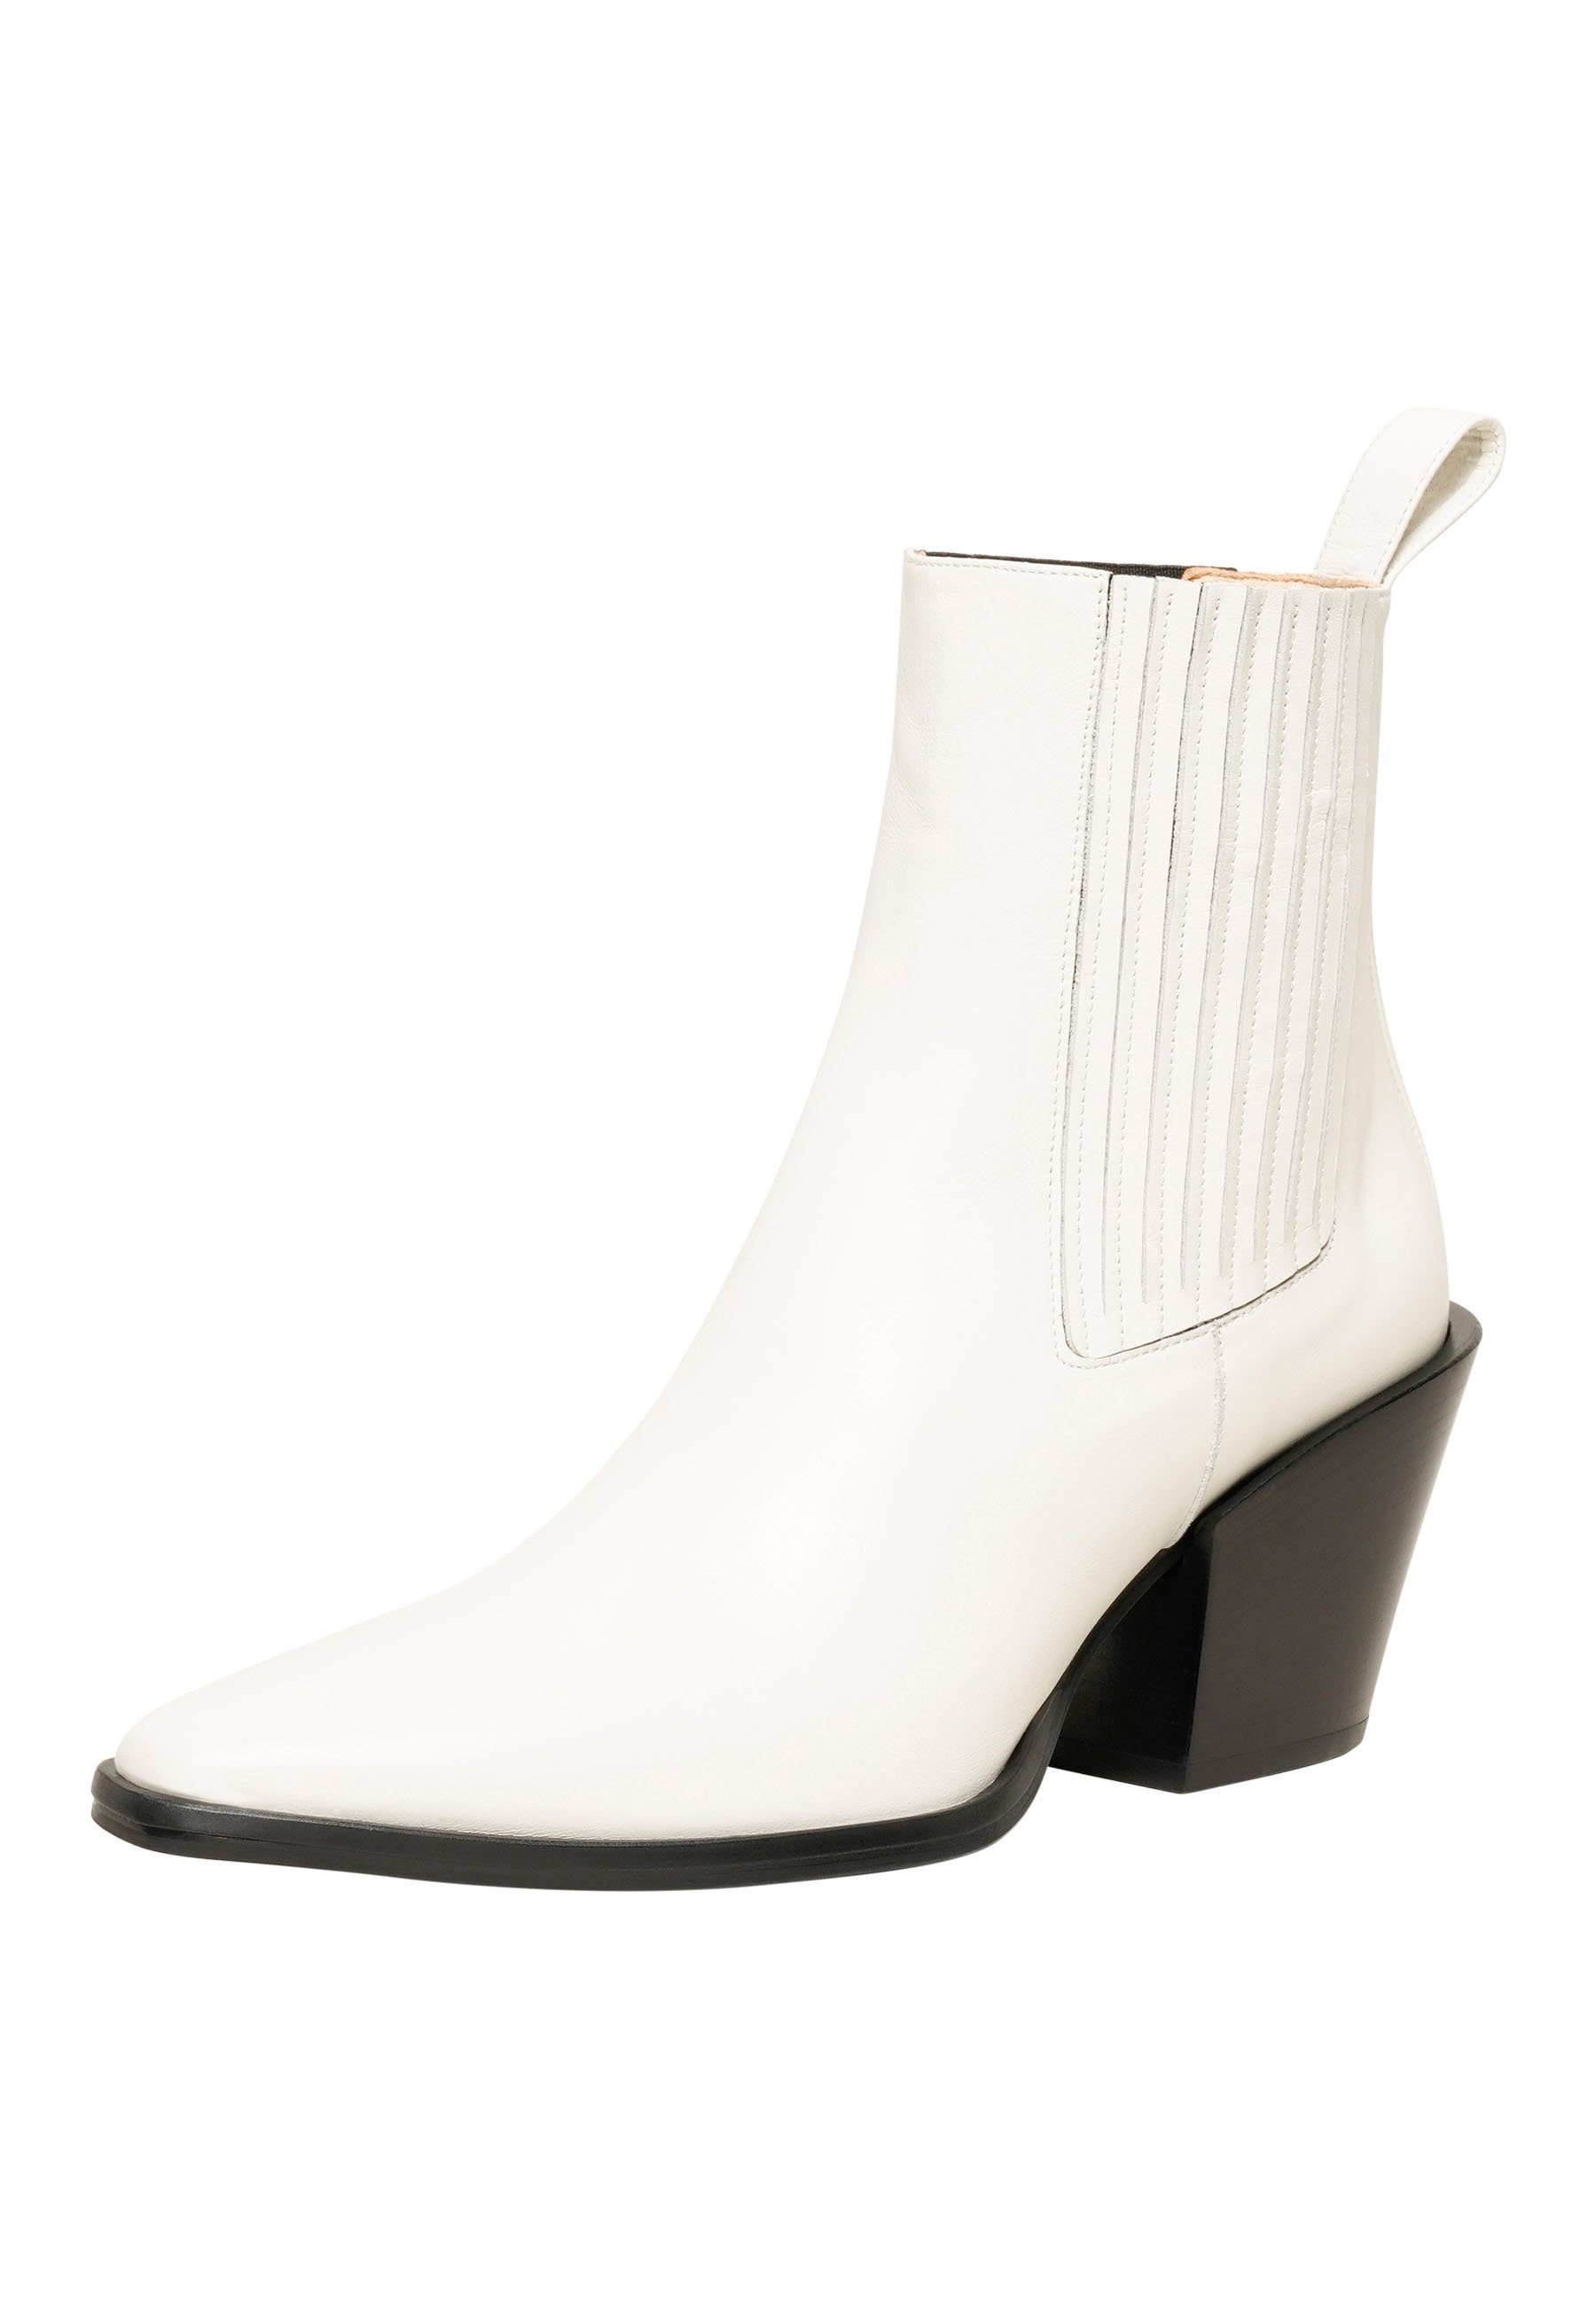 Henry Stevens Madison Stiefelette Cowboy-Boots Damen Schlupfboots Leder Weiß handgefertigt, WB Businessschuh